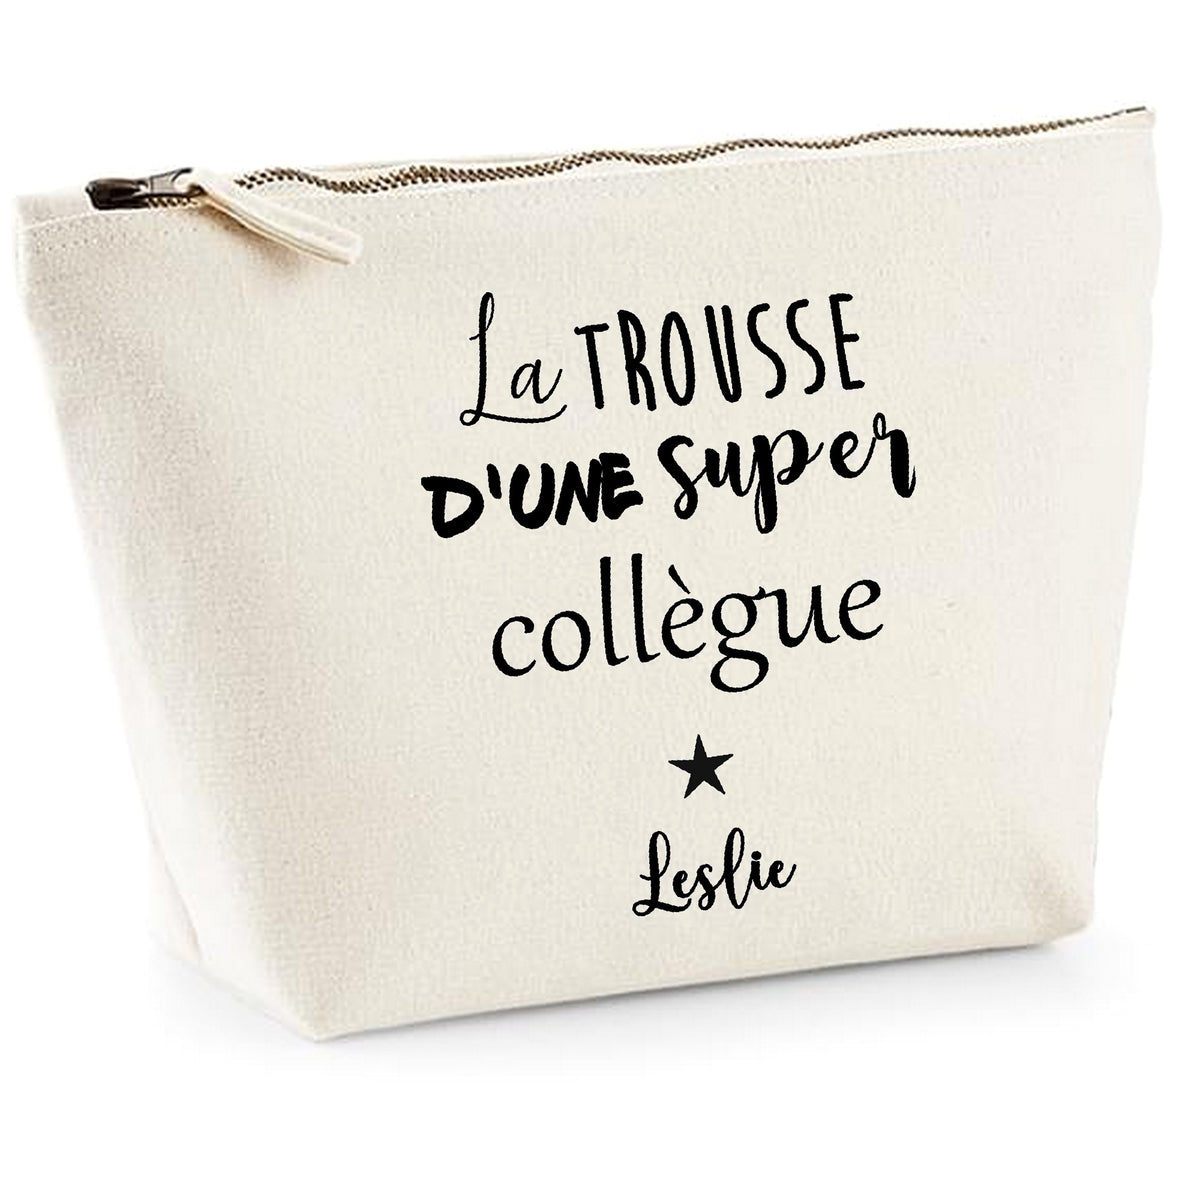 La trousse d'une super collègue – Cool and the bag